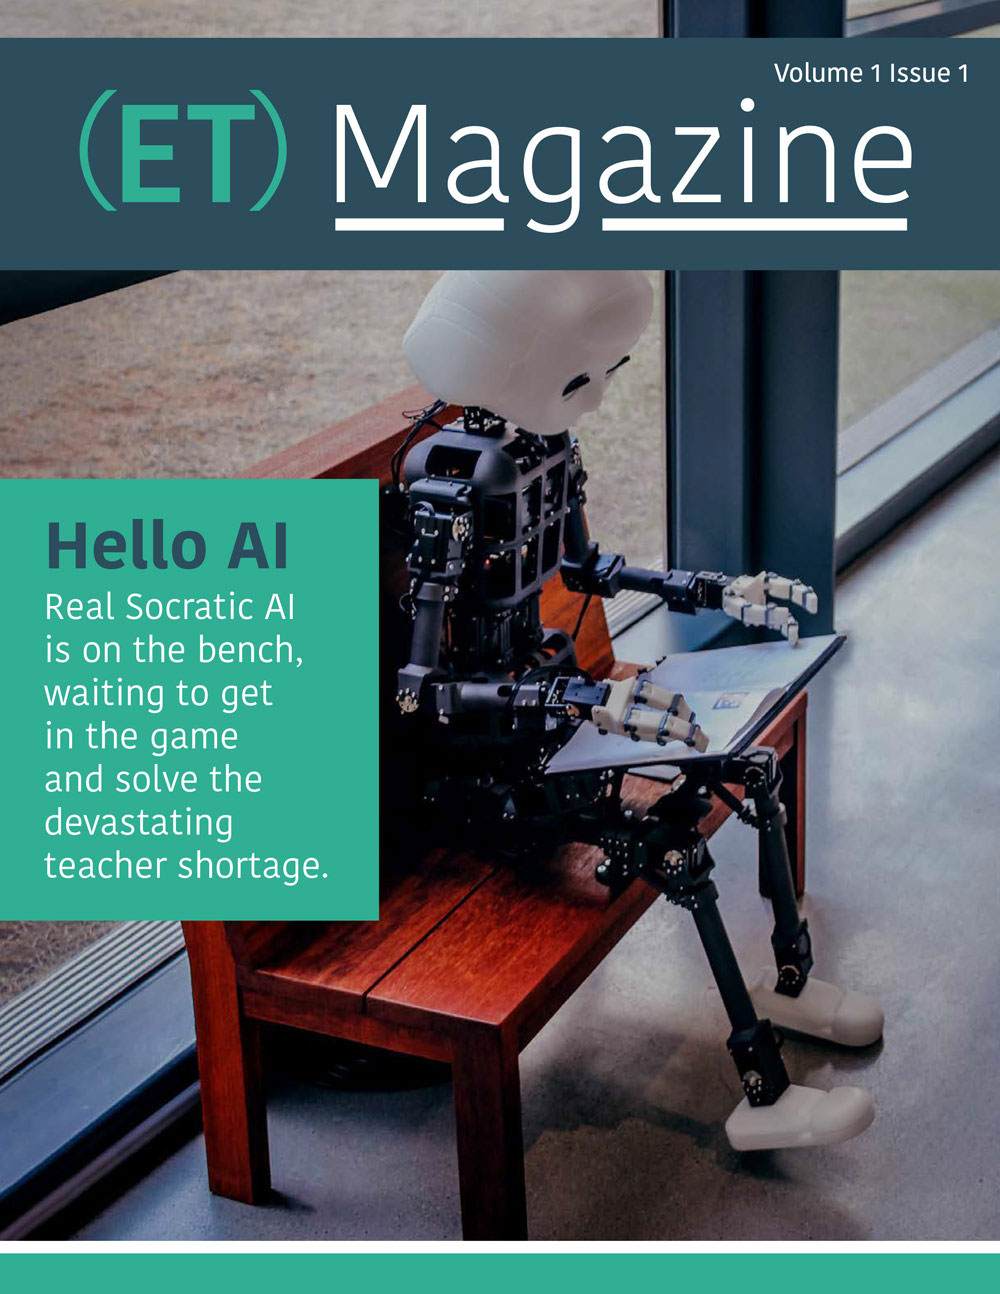 ET Magazine Volume 1 Issue 1 cover